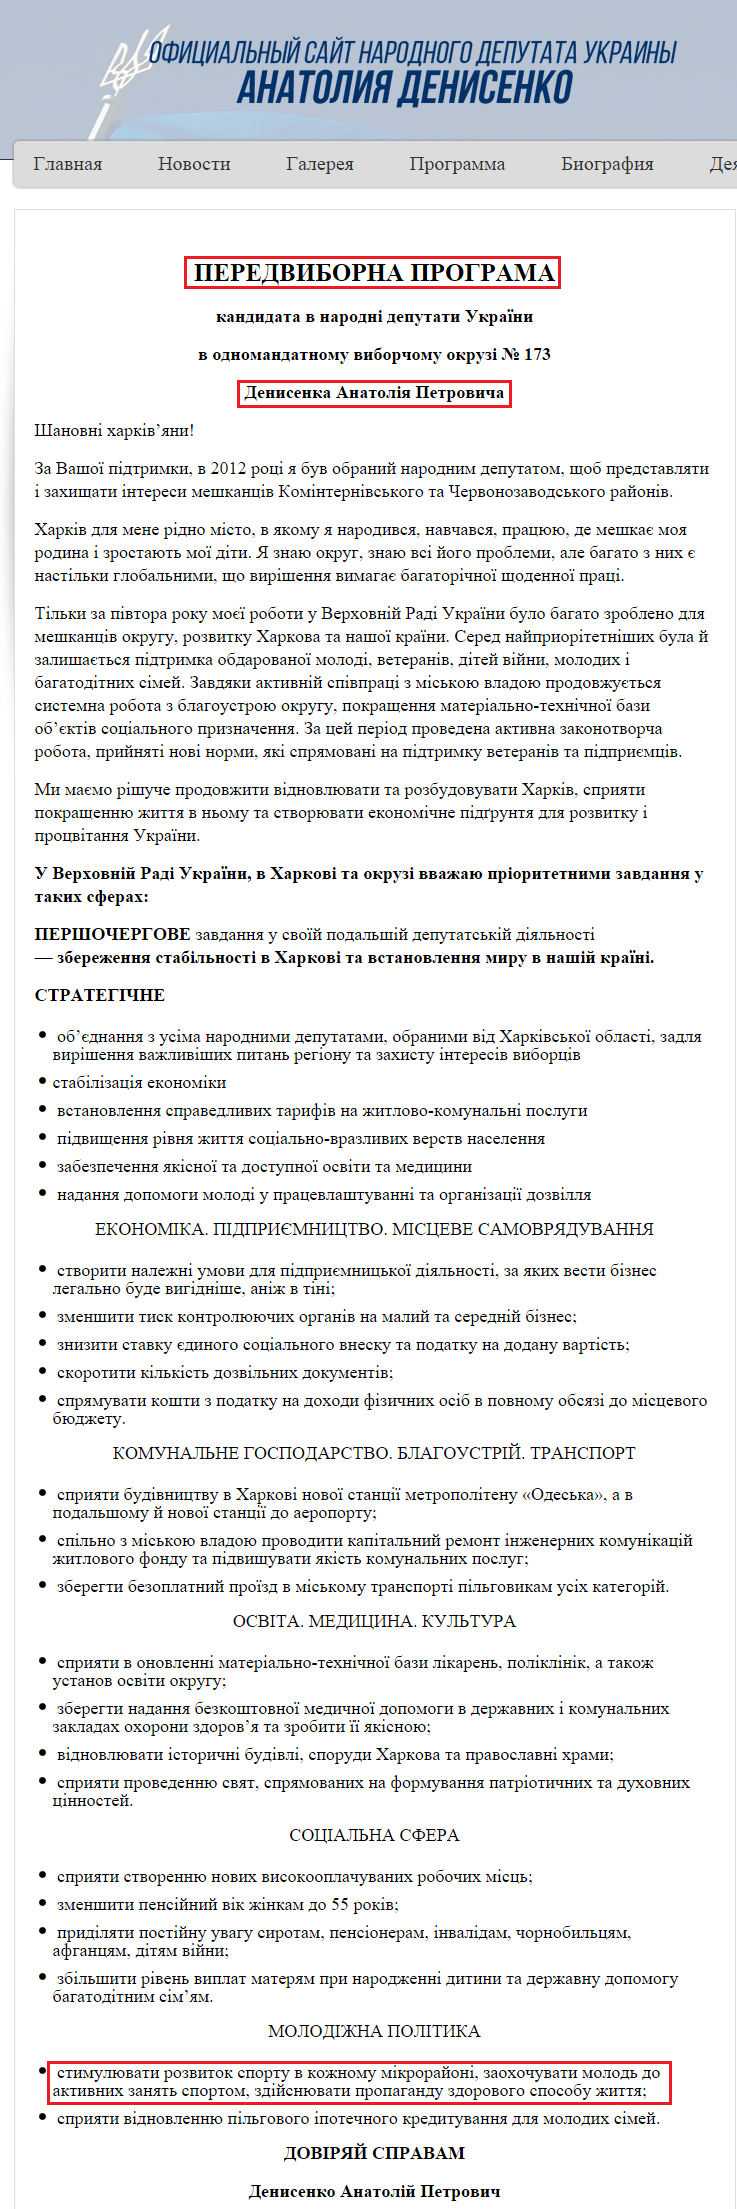 http://denisenko.kharkov.ua/programma